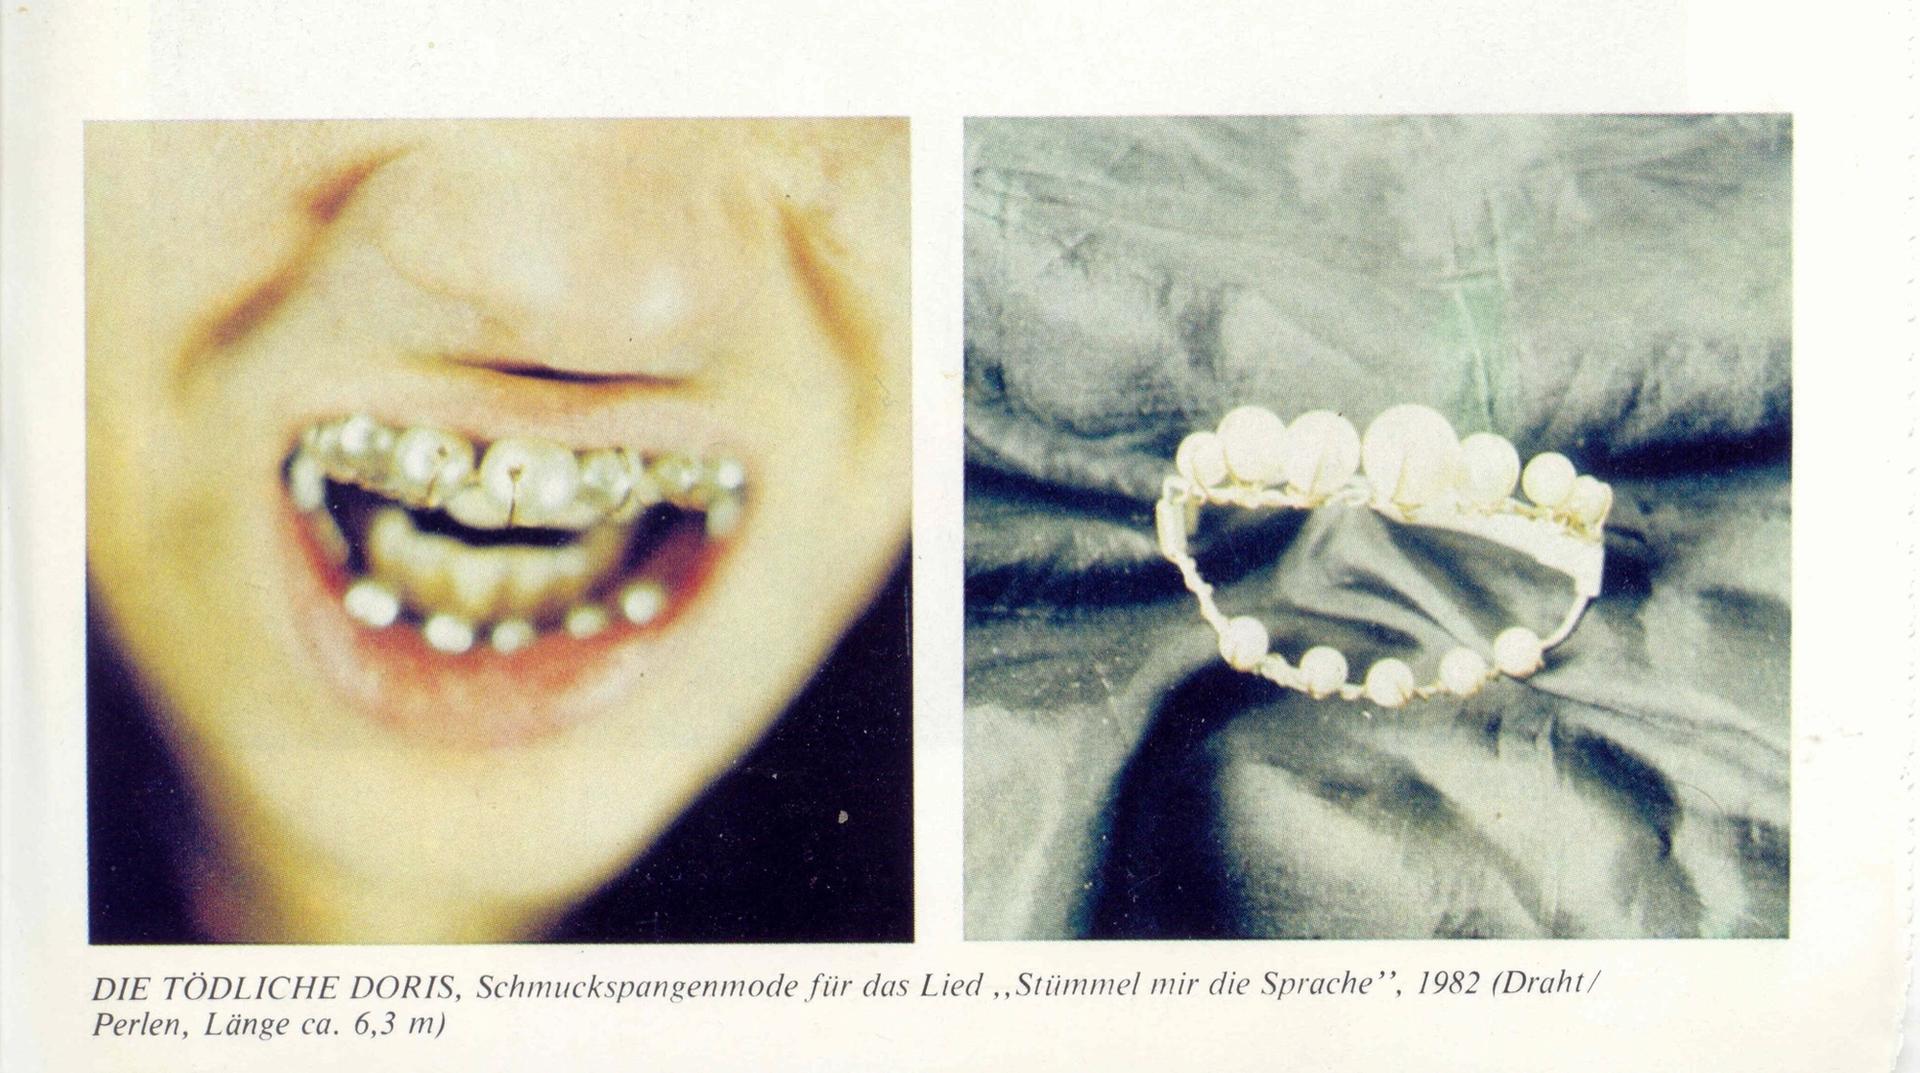 Schmuckzahnspange (Jewelry Implants)/Courtesy Wolfgang Müller/Archiv der Tödlichen Doris